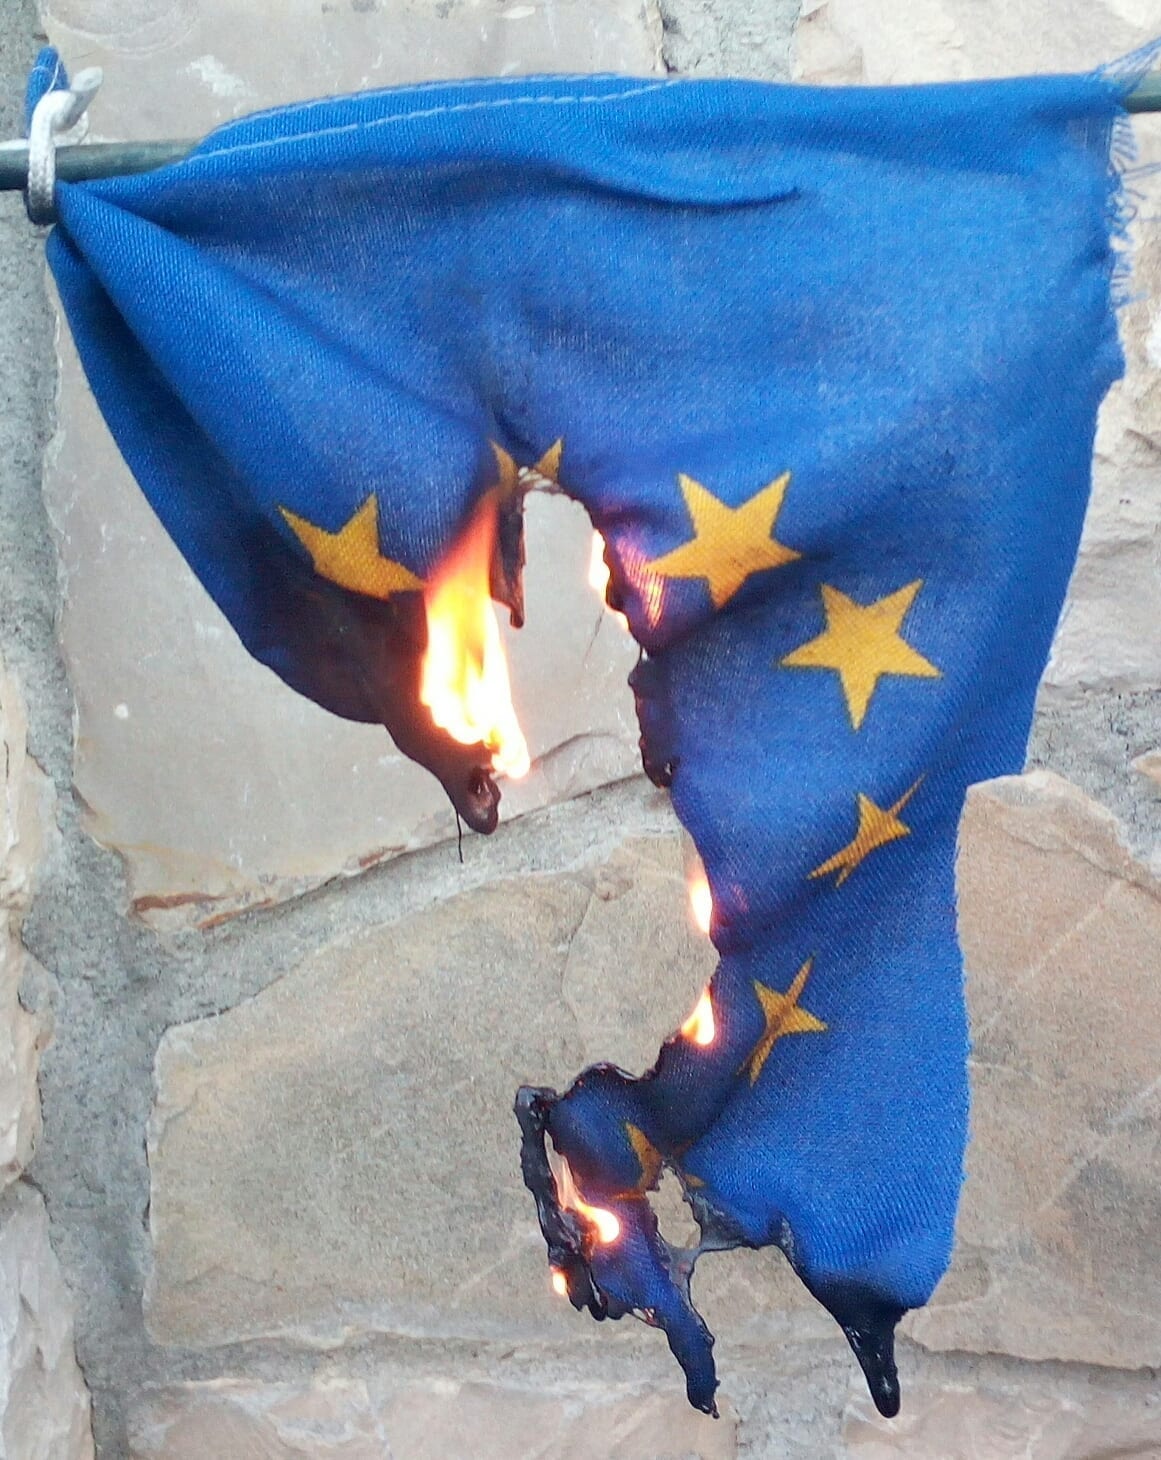 Coronavirus, Saronno: Forza Nuova ha bruciato la bandiera della Ue